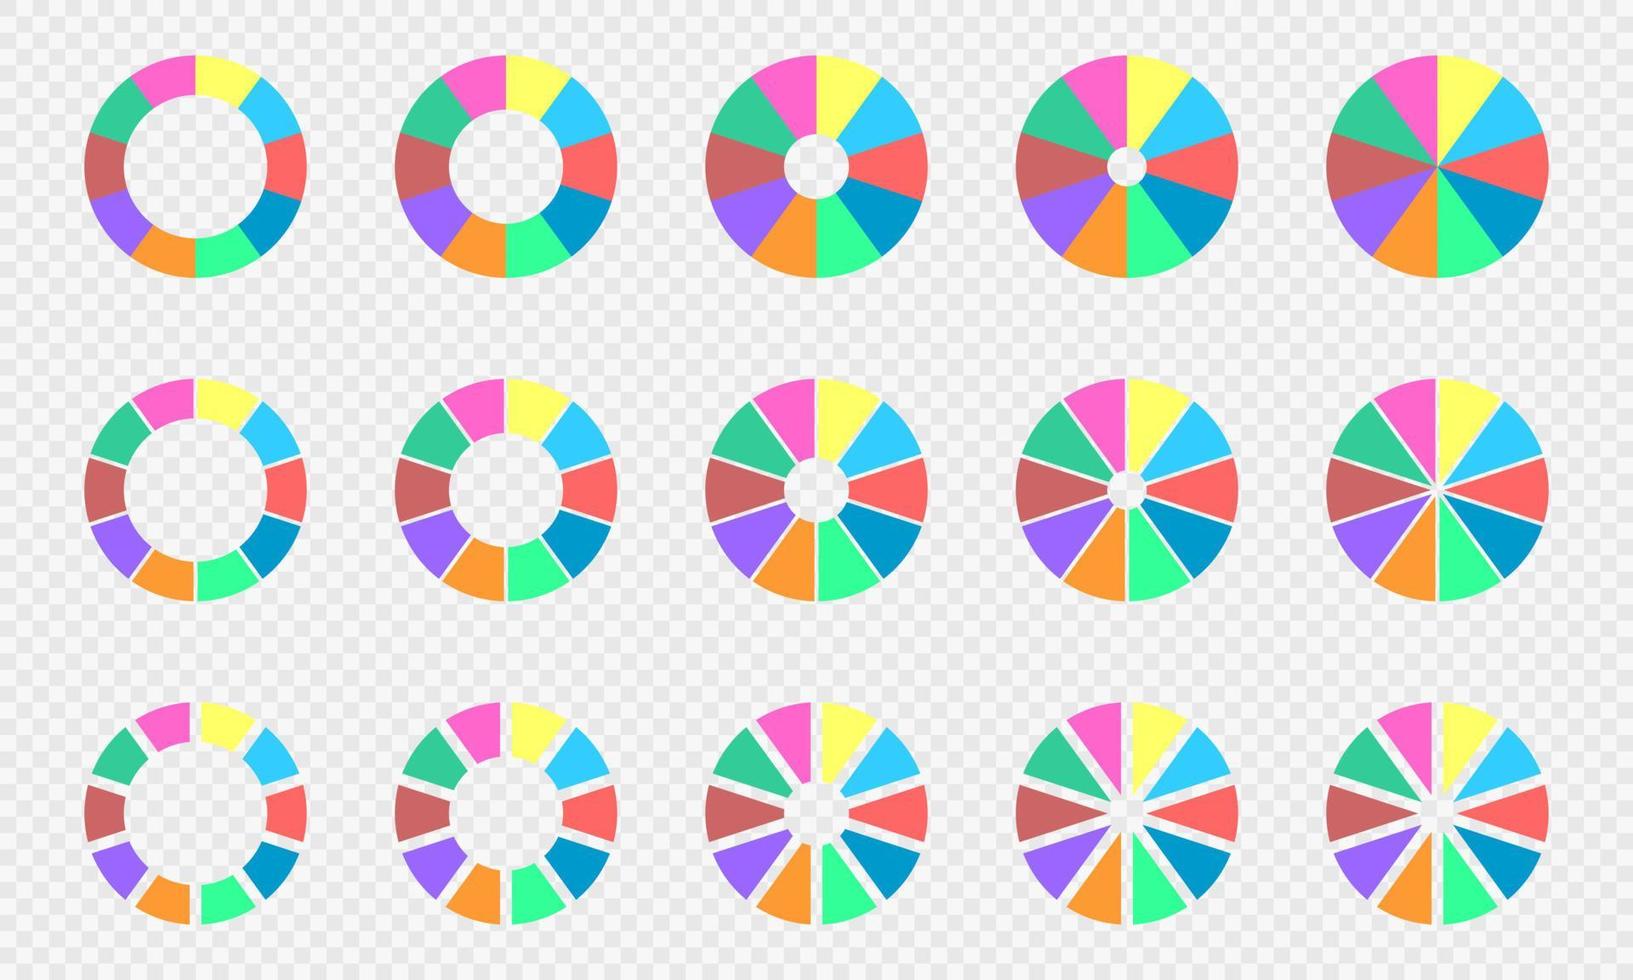 tarta y rosquilla cartas colocar. circulo diagramas dividido en 10 secciones de diferente colores. infografía ruedas redondo formas cortar en diez partes vector